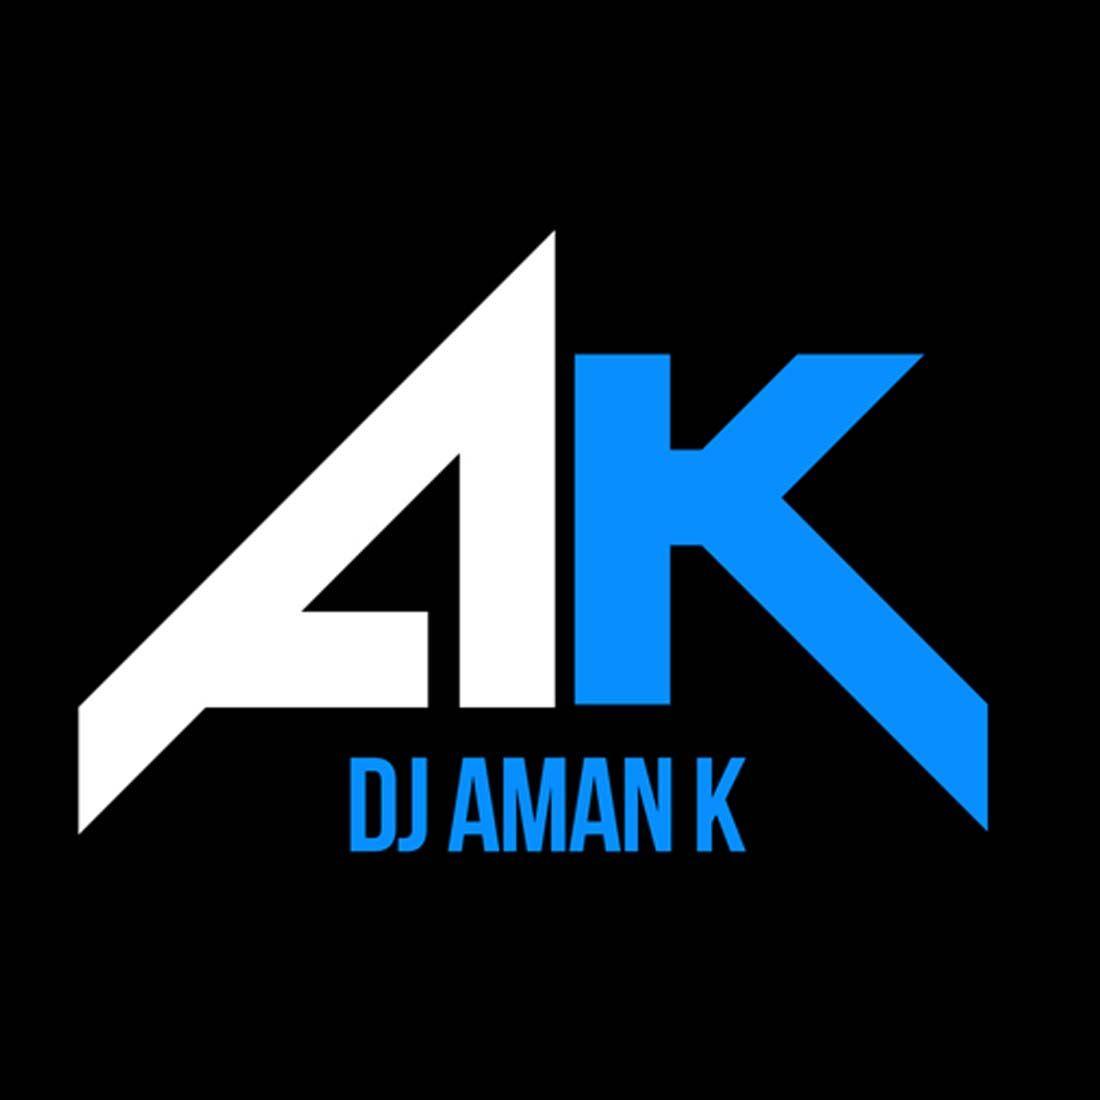 Aman Logo - UB8 Design | DJ Aman K Custom Logo